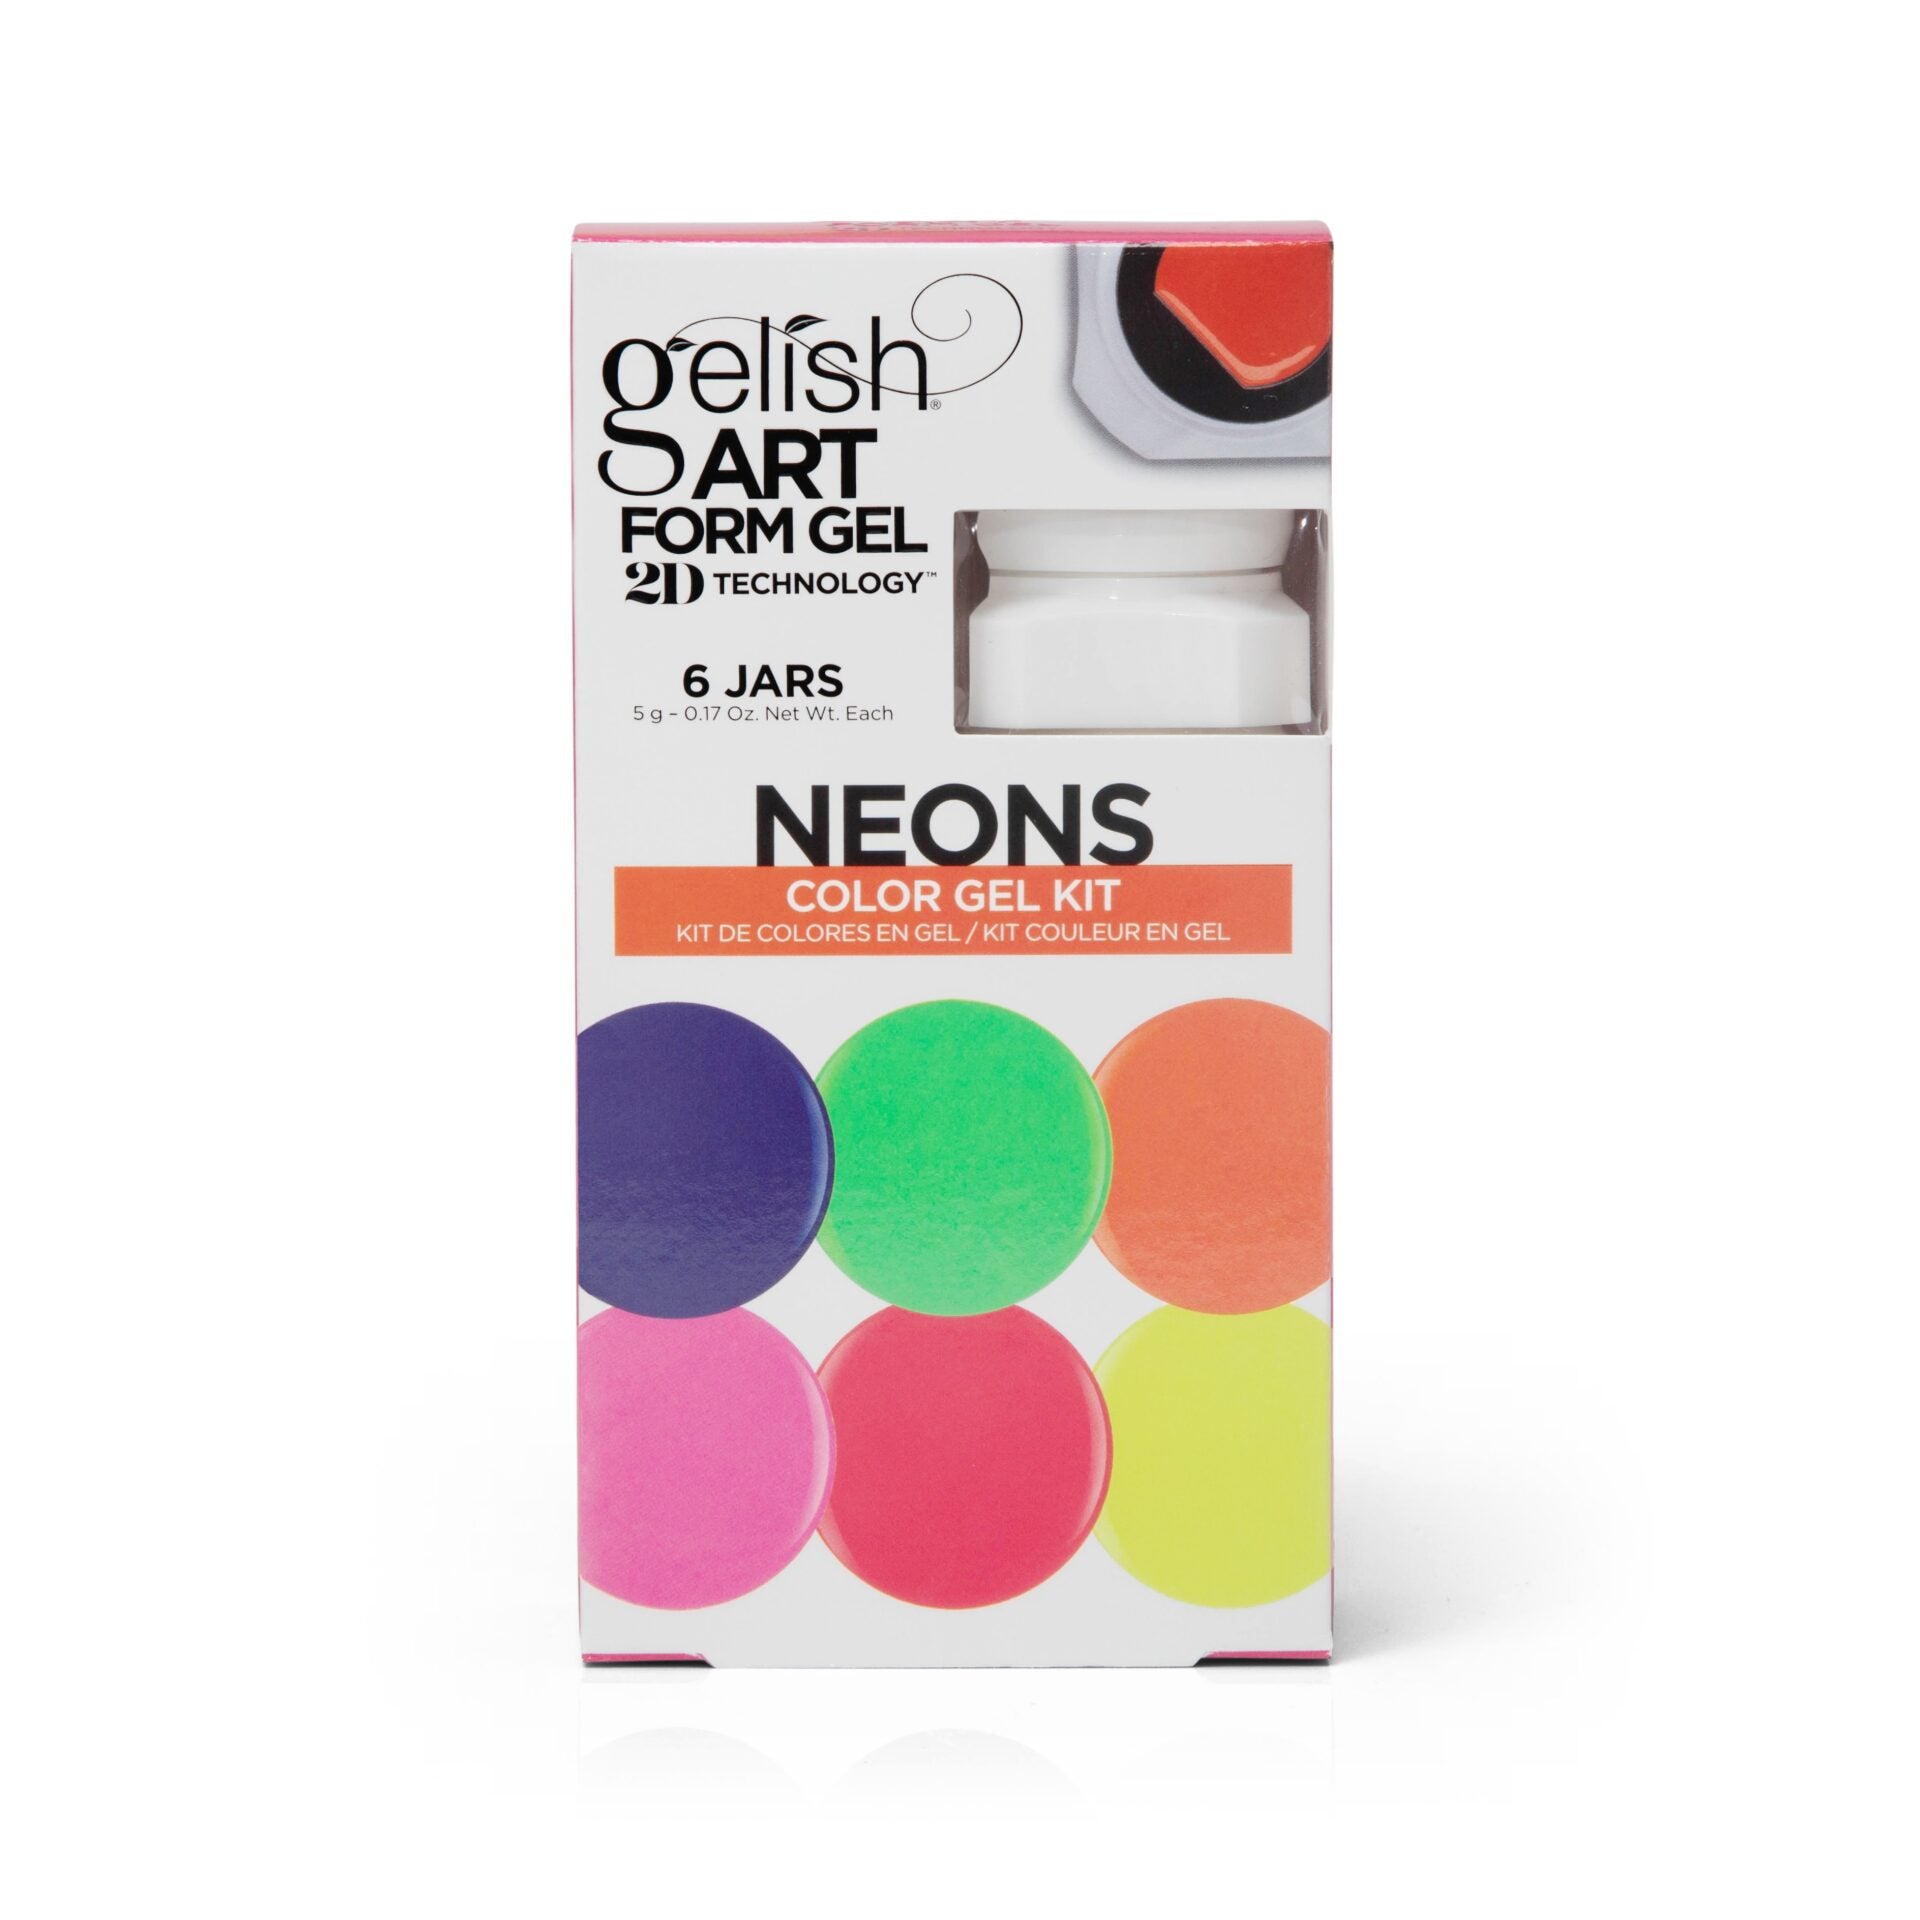 Neons Art Form Gel Kit